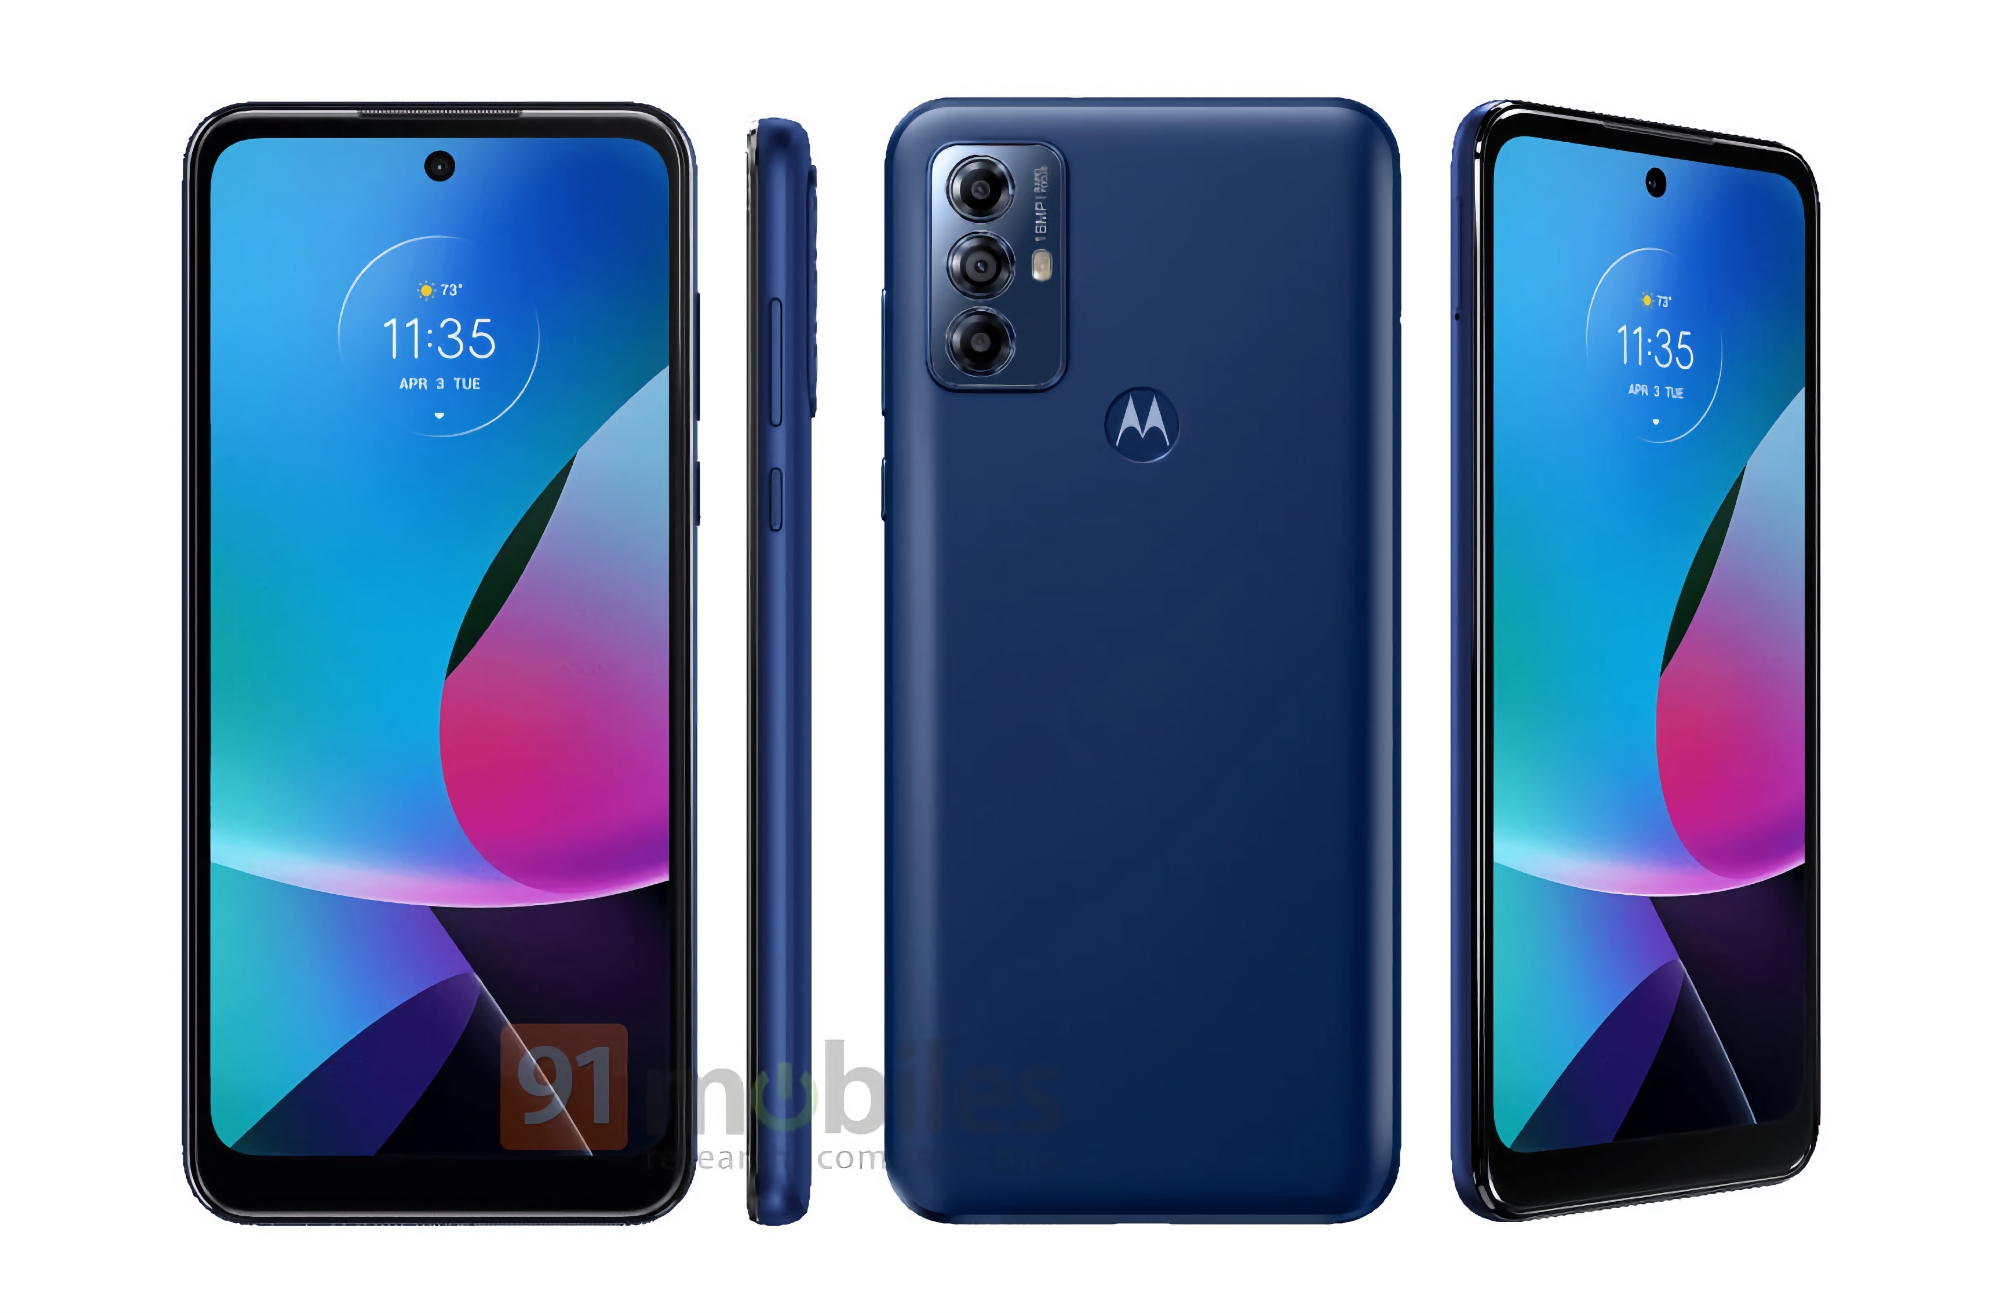 Man kann nie zu viele Budget-Smartphones haben: Motorola bereitet die Veröffentlichung des Moto G Play (2022) mit Android Go Edition und MediaTek Helio G37 Chip vor